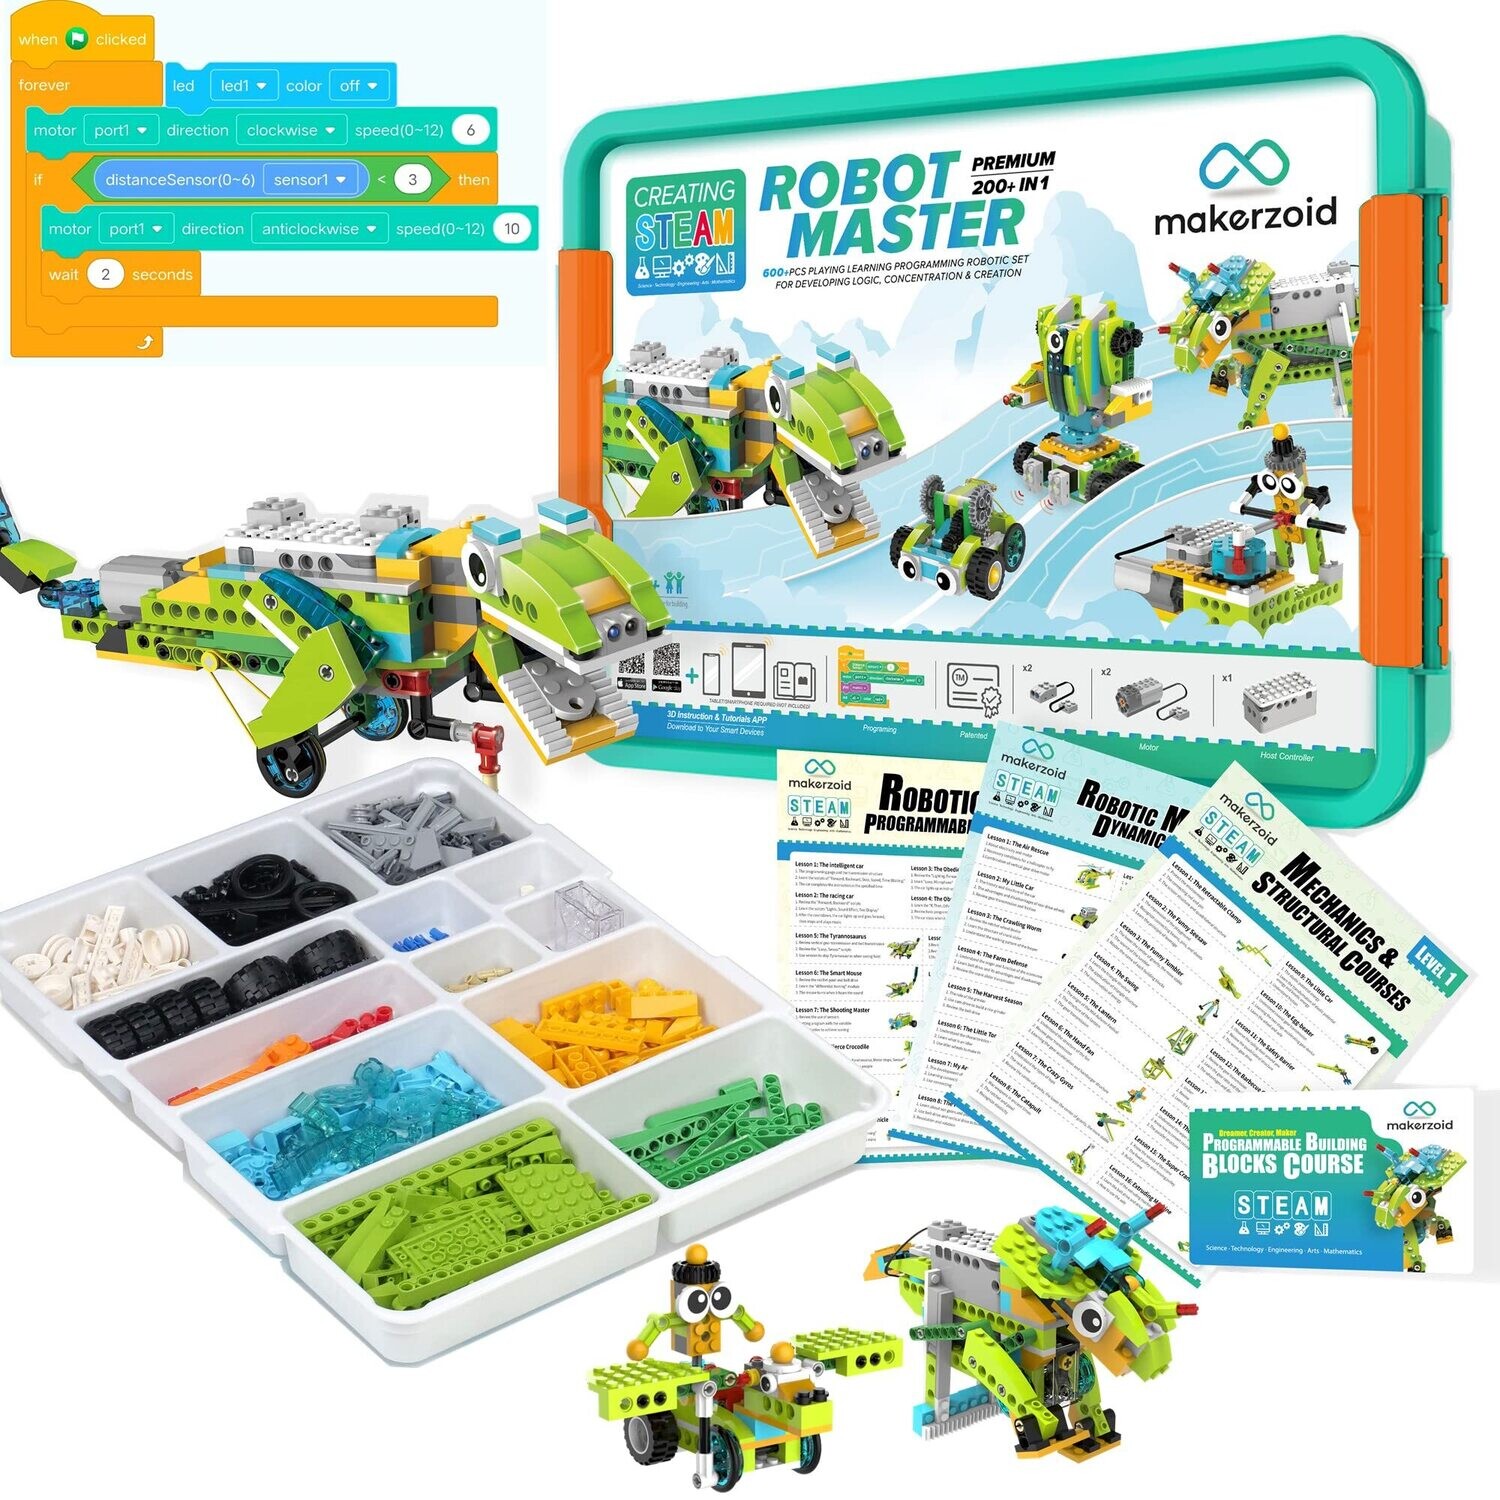 Kit Robot Programmable pour enfant - Makerzoid 200 en 1